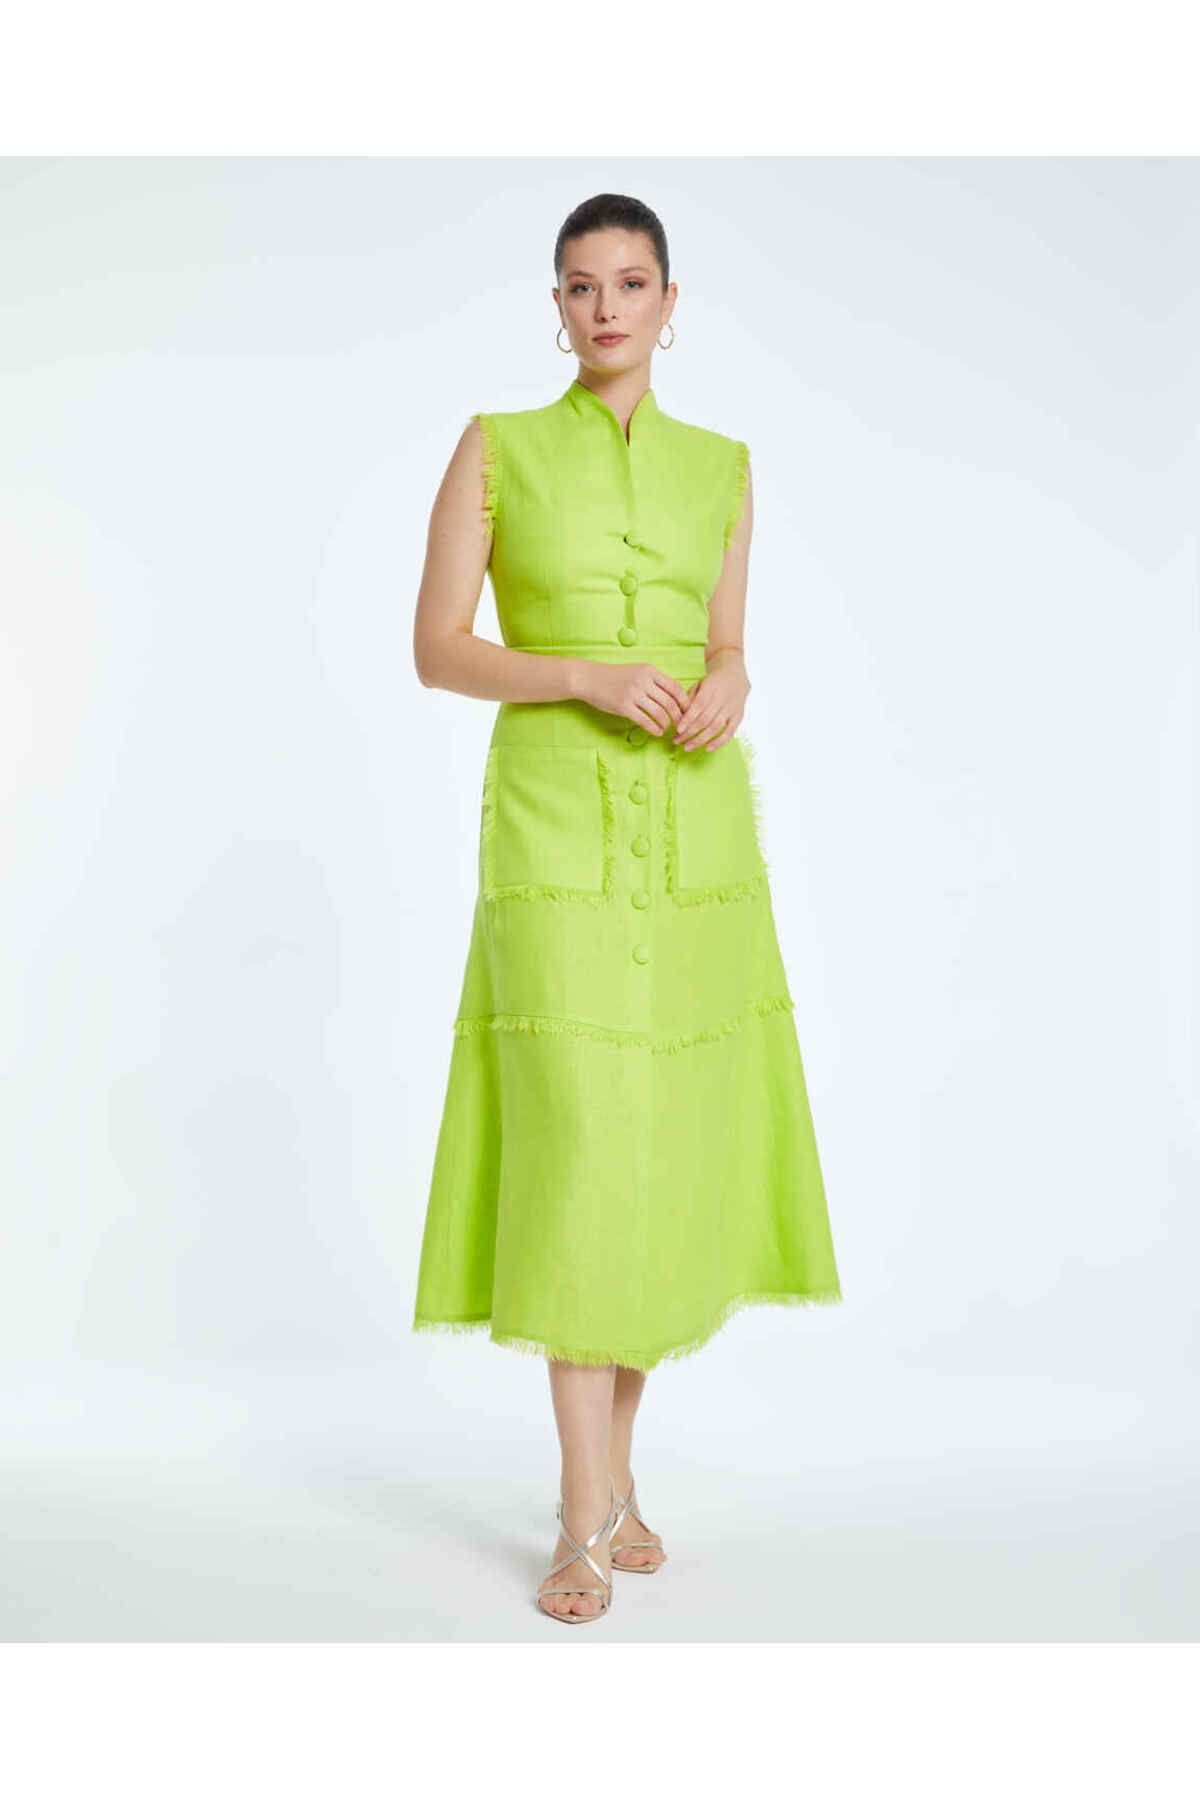 Serpil Serpil Kadın Fıstık Yeşil Elbise 38348